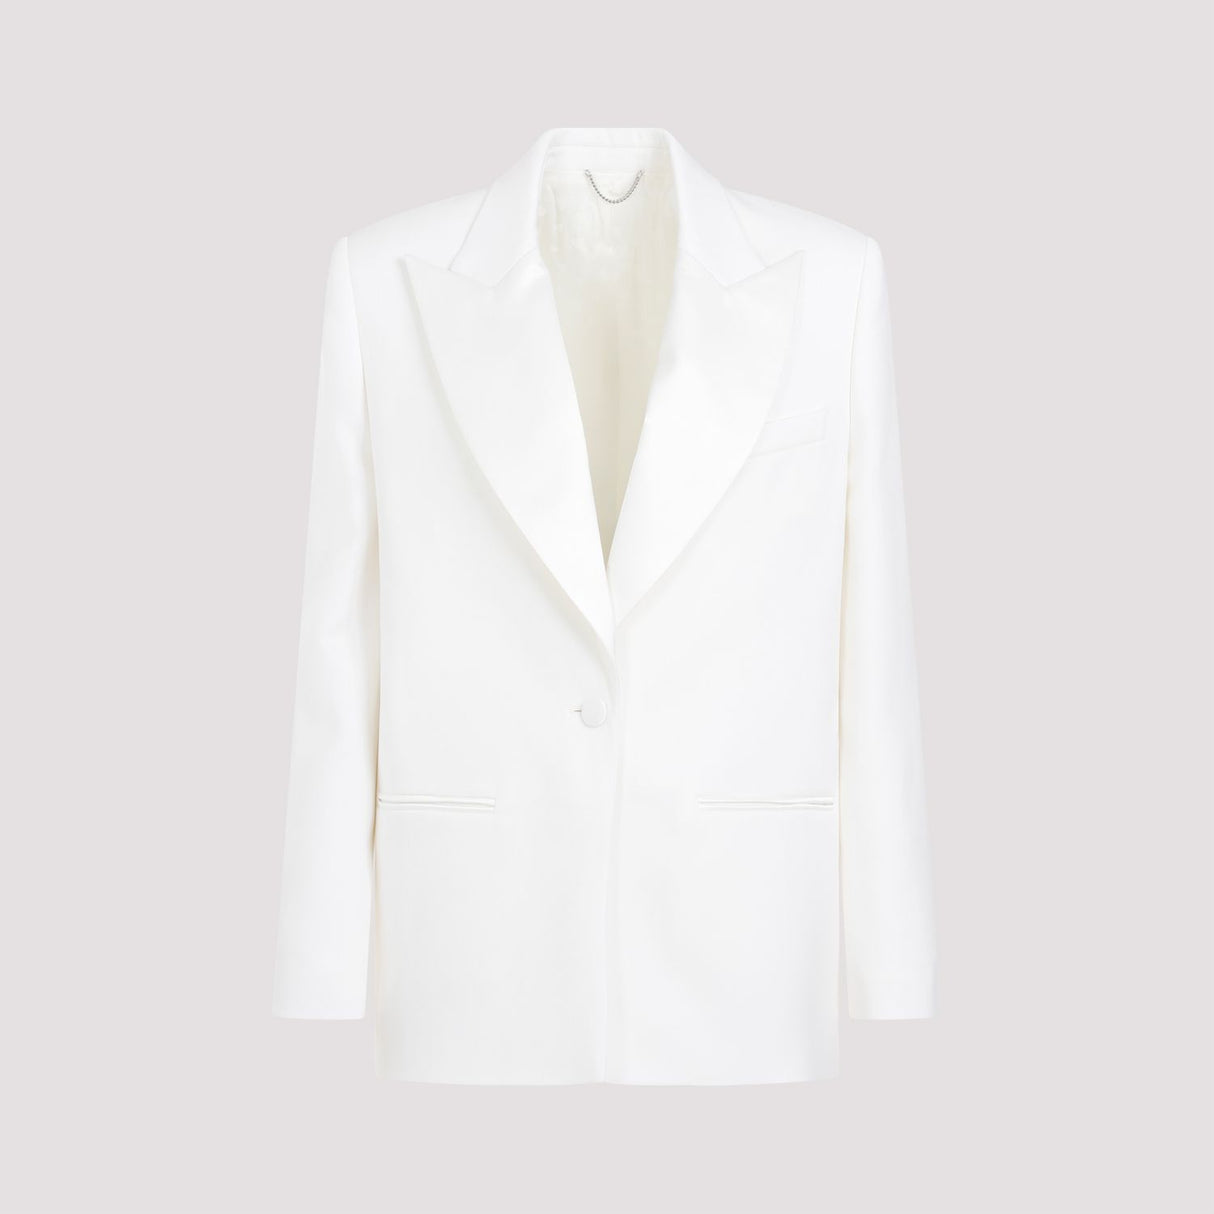 Áo khoác len trắng tinh tế cho phụ nữ - Bộ sưu tập SS24